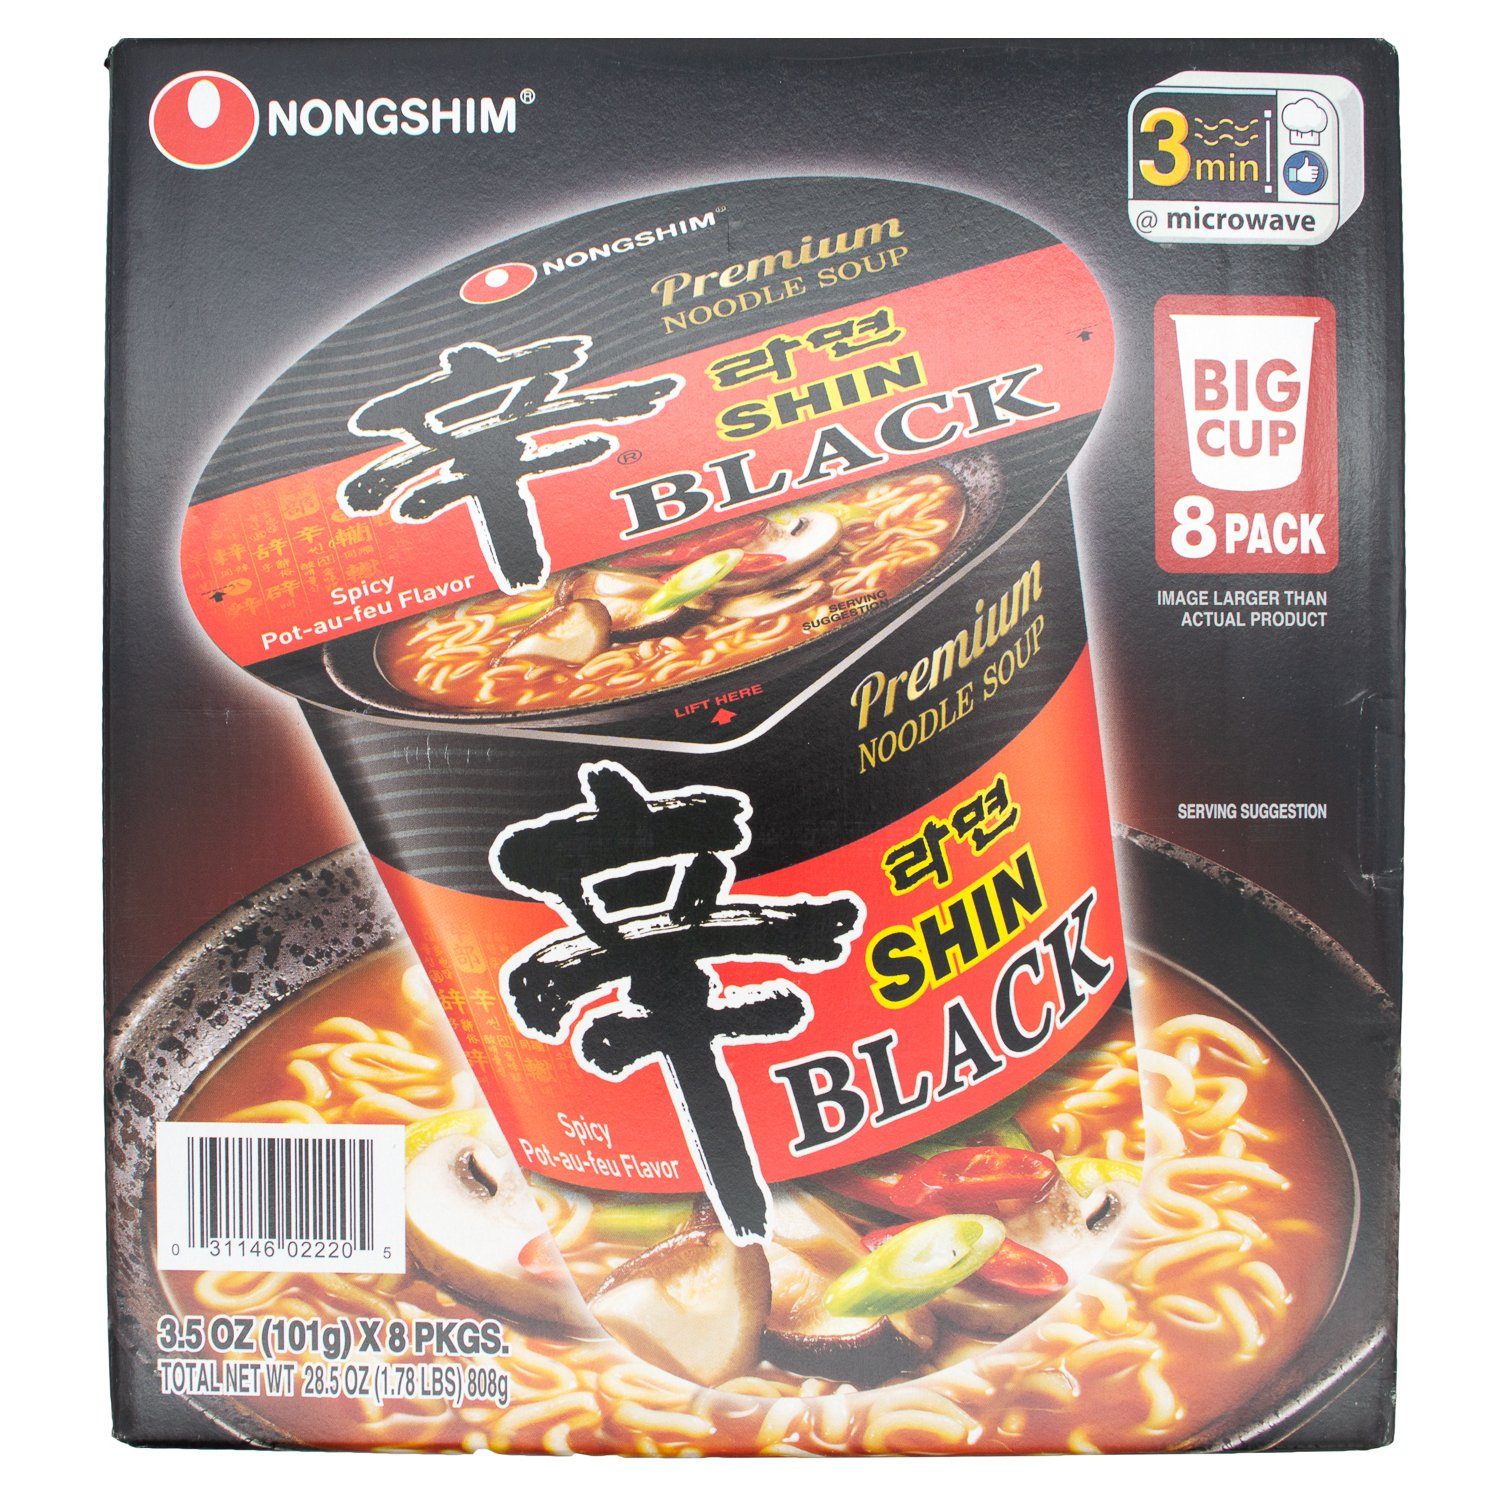 Nongshim Shin Black Noodle Soup Nongshim 3.5 Oz-8 Count 